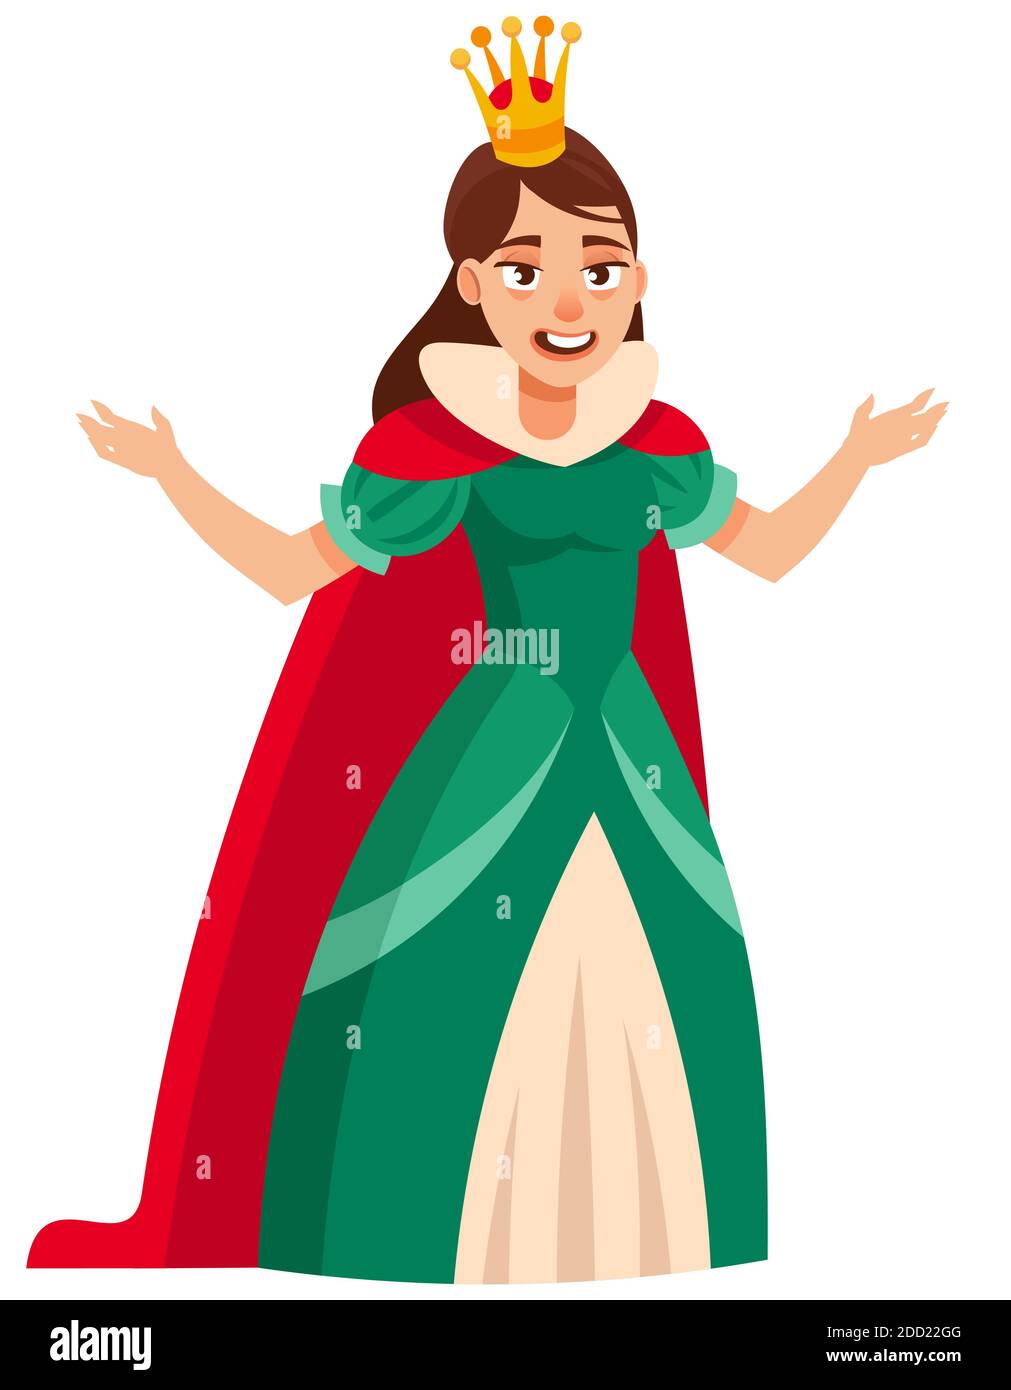 Standing joyful queen. Royal character in cartoon style. Stock Vector